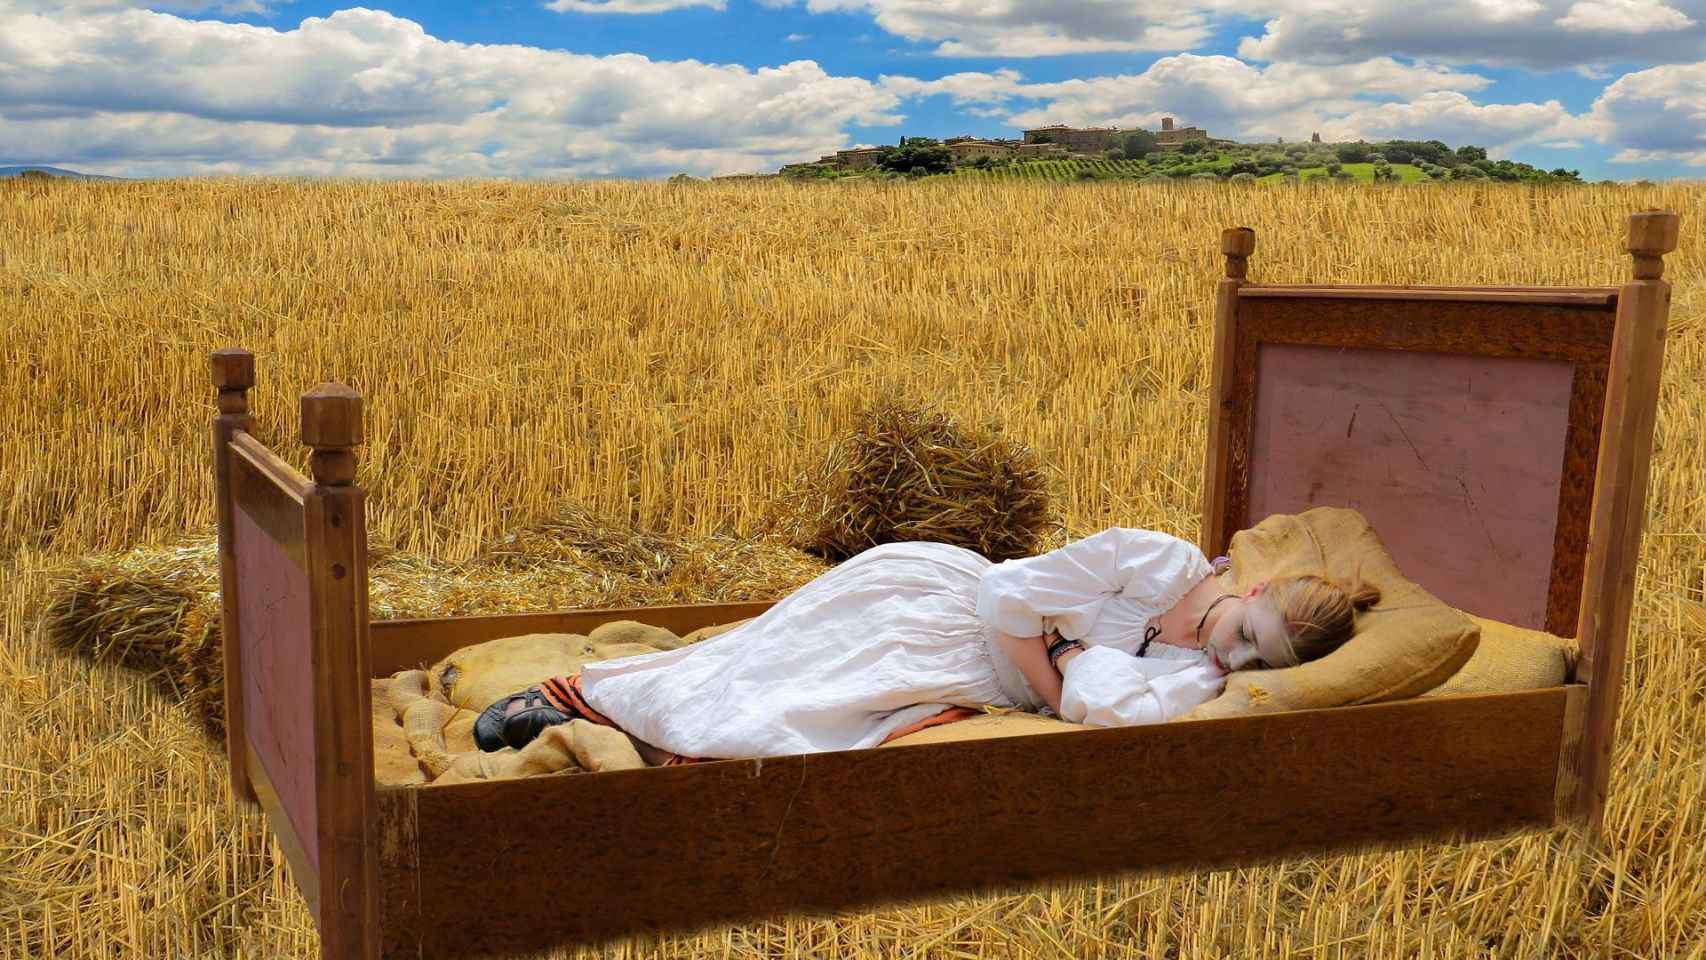 La gente medieval dormía de otra manera, ¿por qué dejamos de hacerlo?